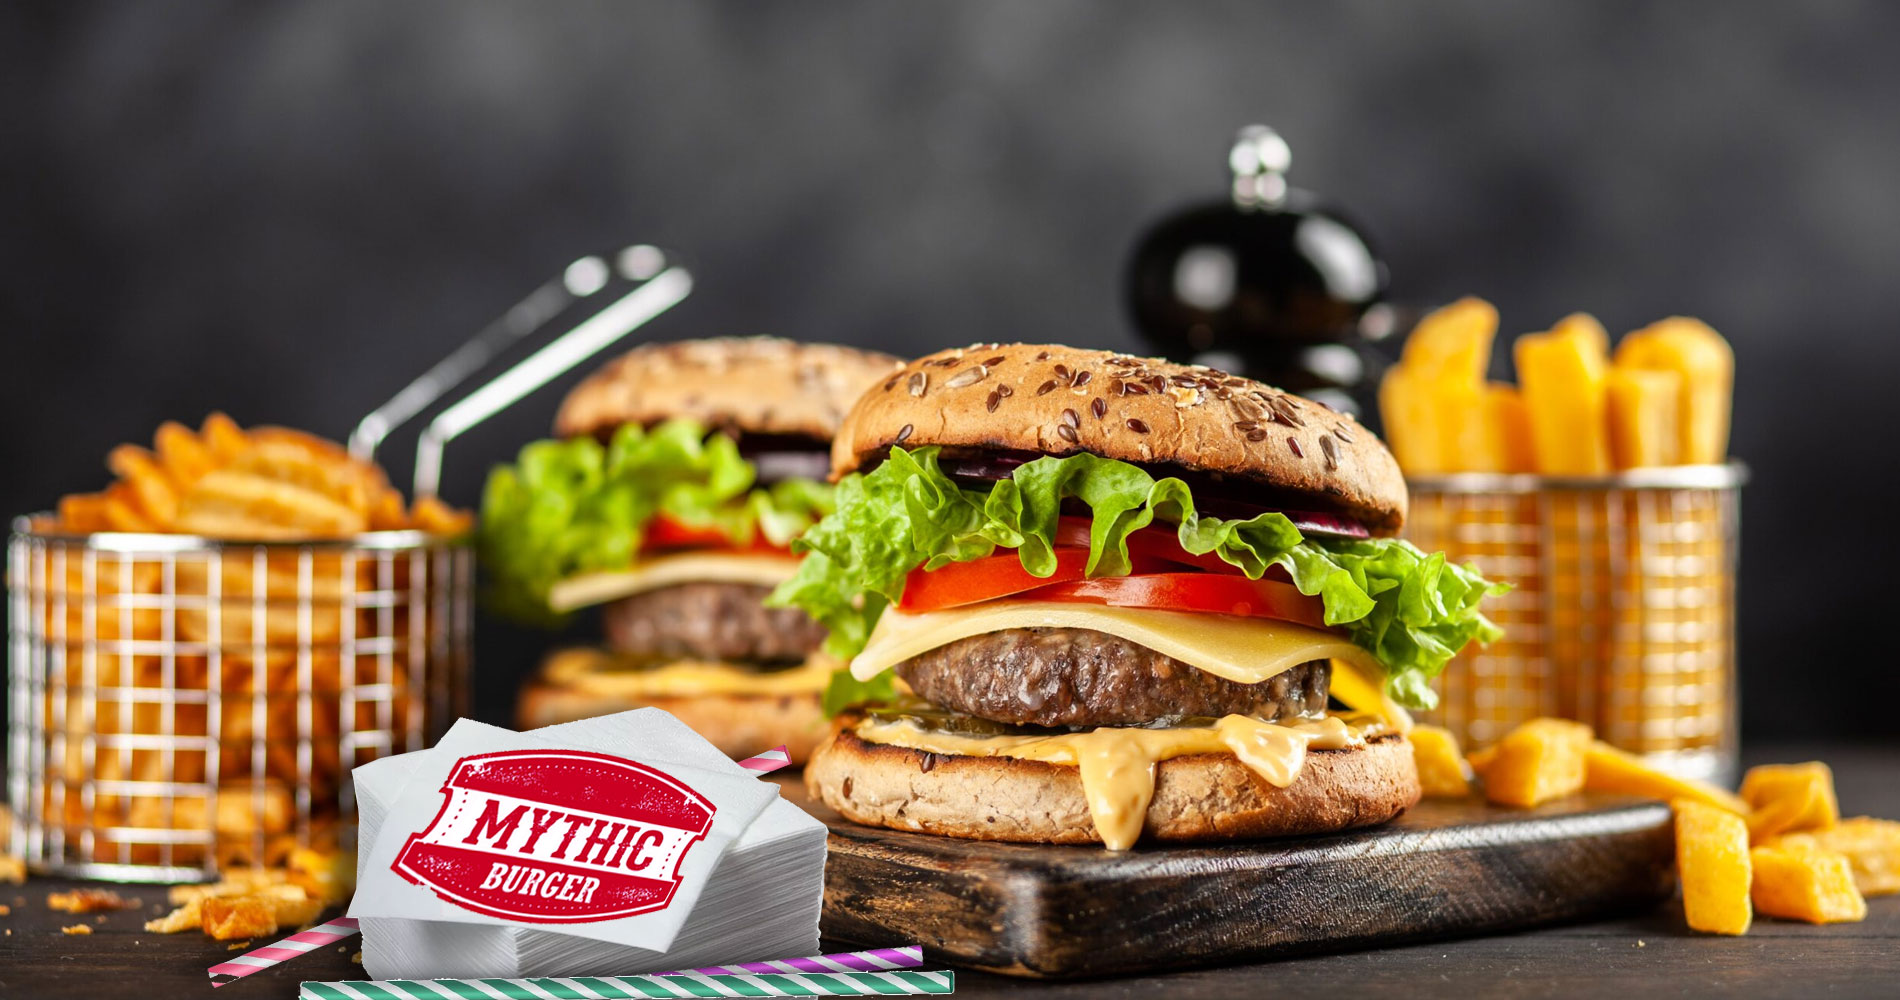 les fast-foods Mythic Burger en France